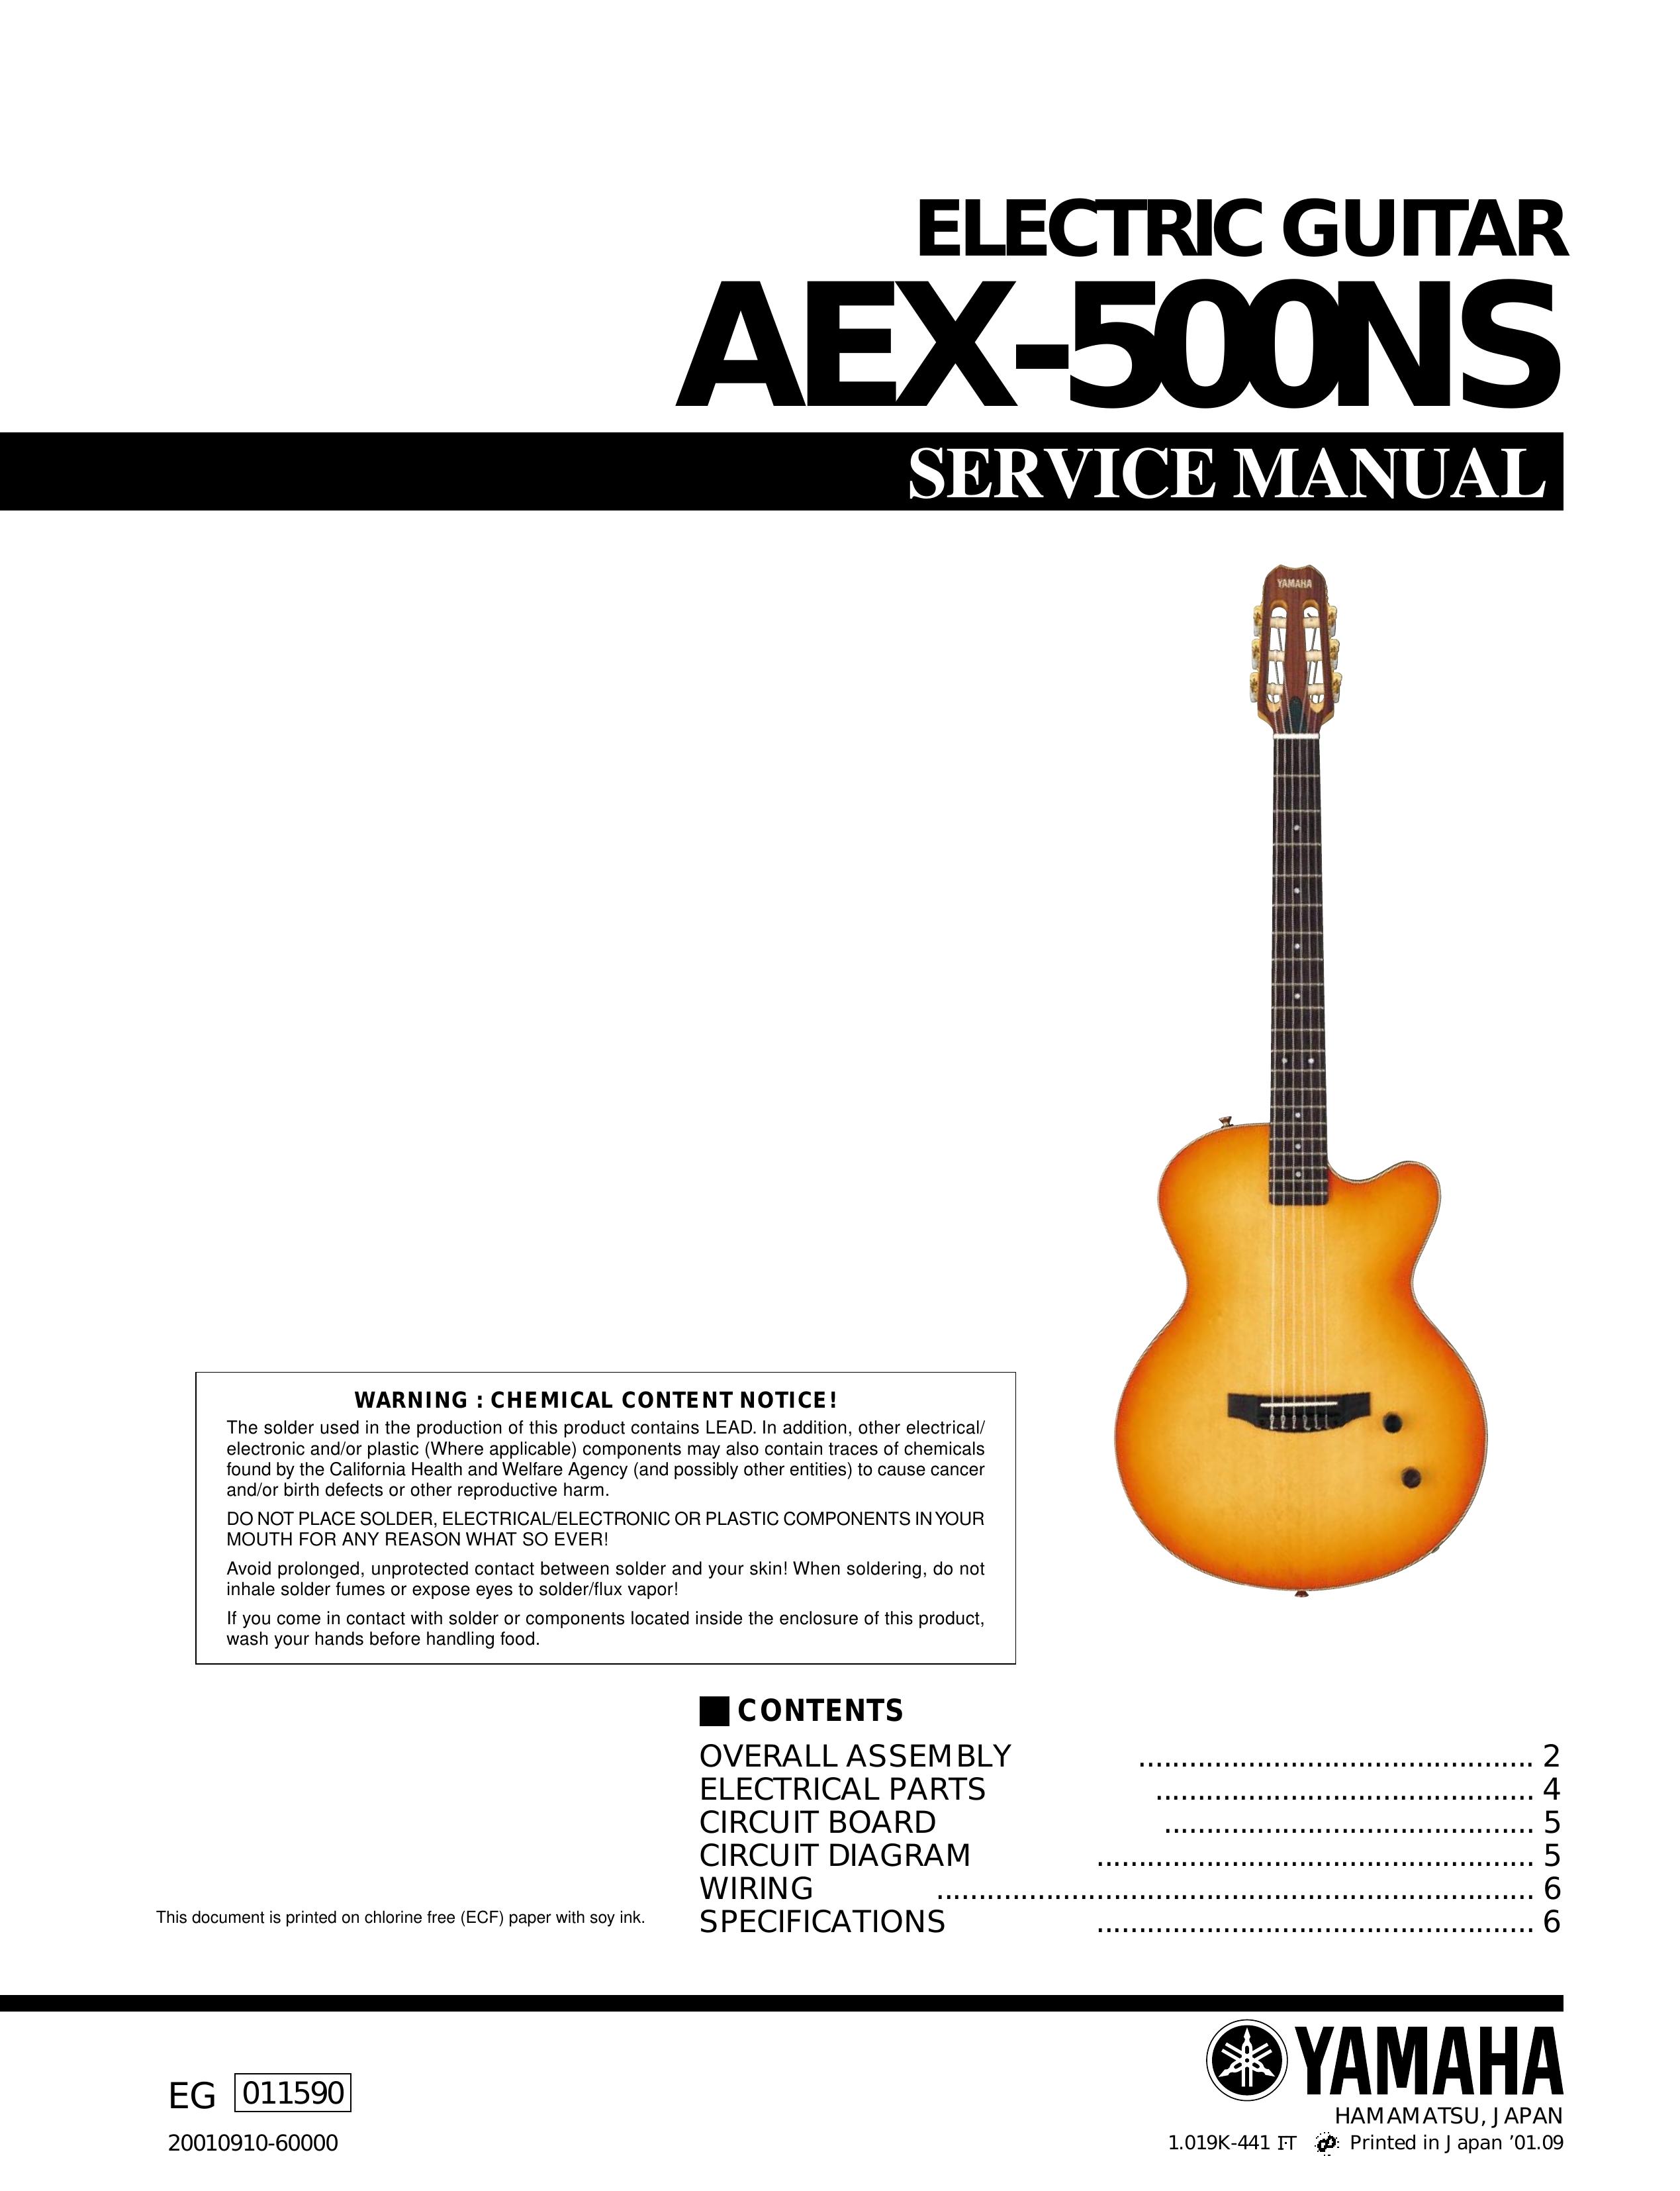 Yamaha AEX-500NS Guitar User Manual